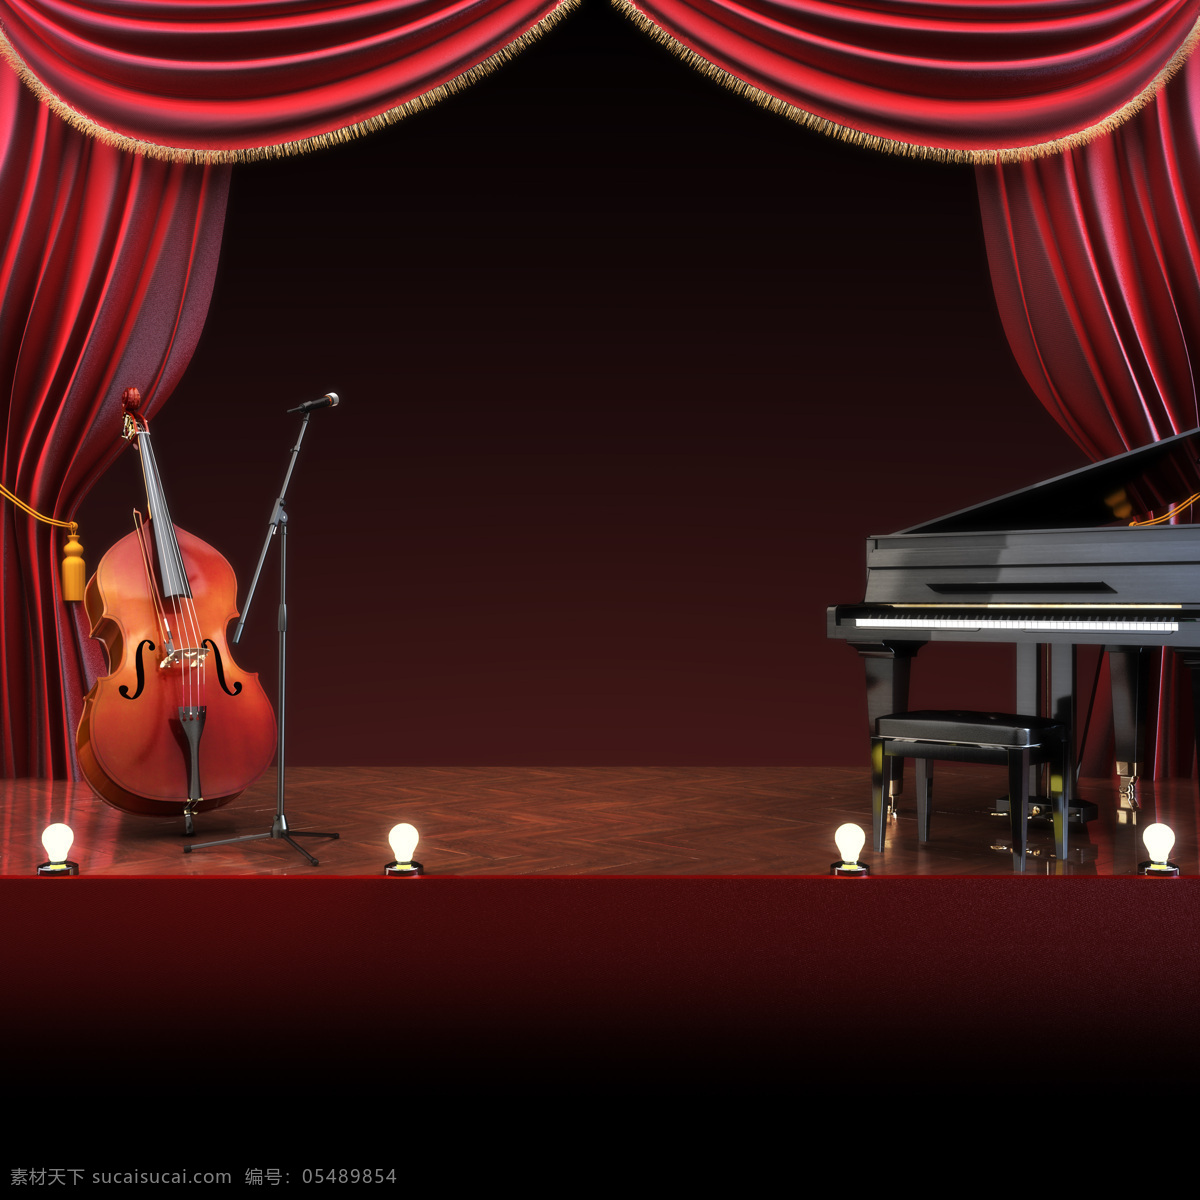 舞台幕布 乐器 舞台背景 麦克风 话筒 大提琴 钢琴 影音娱乐 生活百科